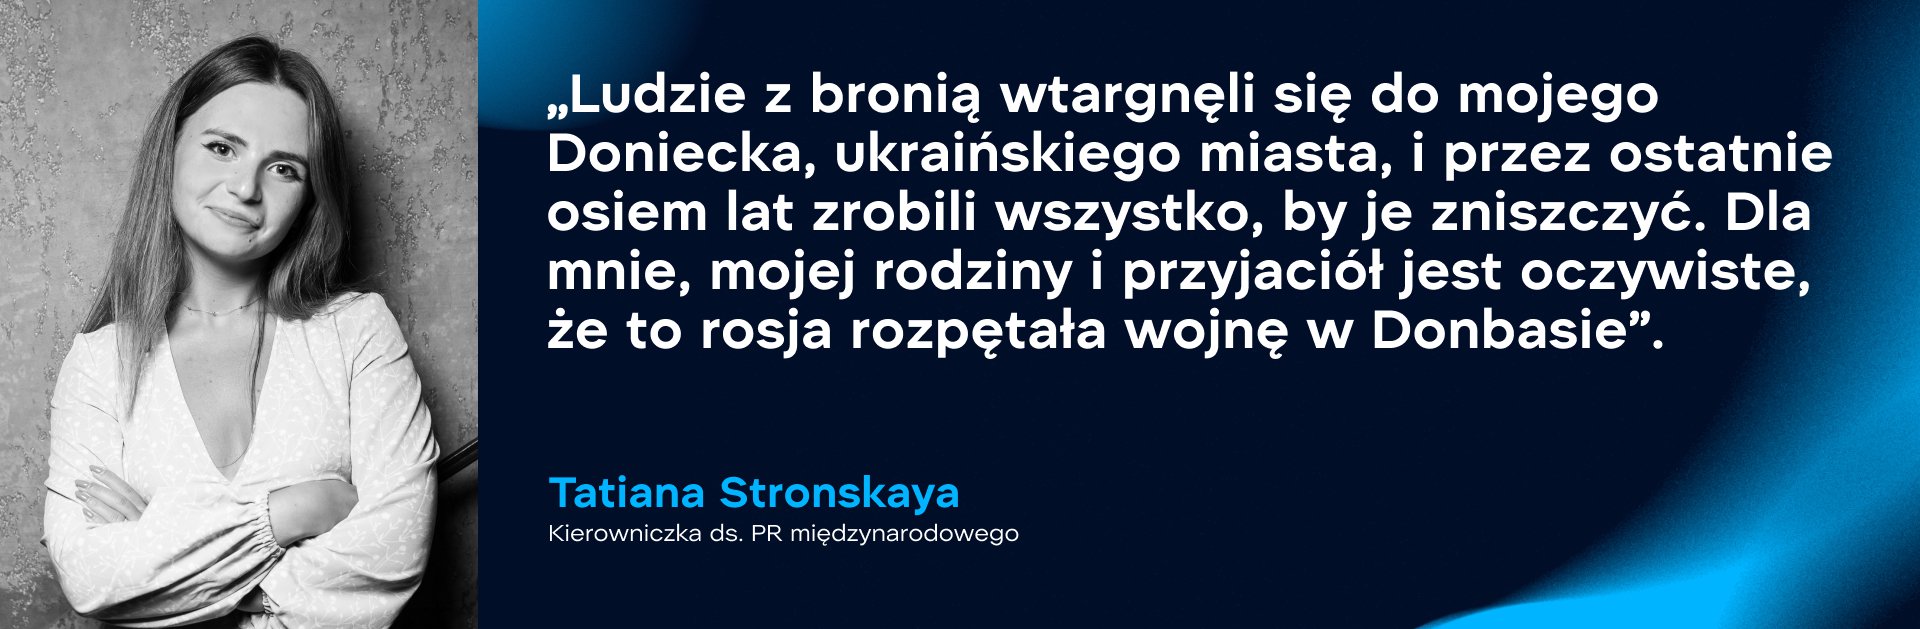 Tetiana Stronska, kierowniczka ds. PR międzynarodowego. Zdjęcie: WePlay Holding